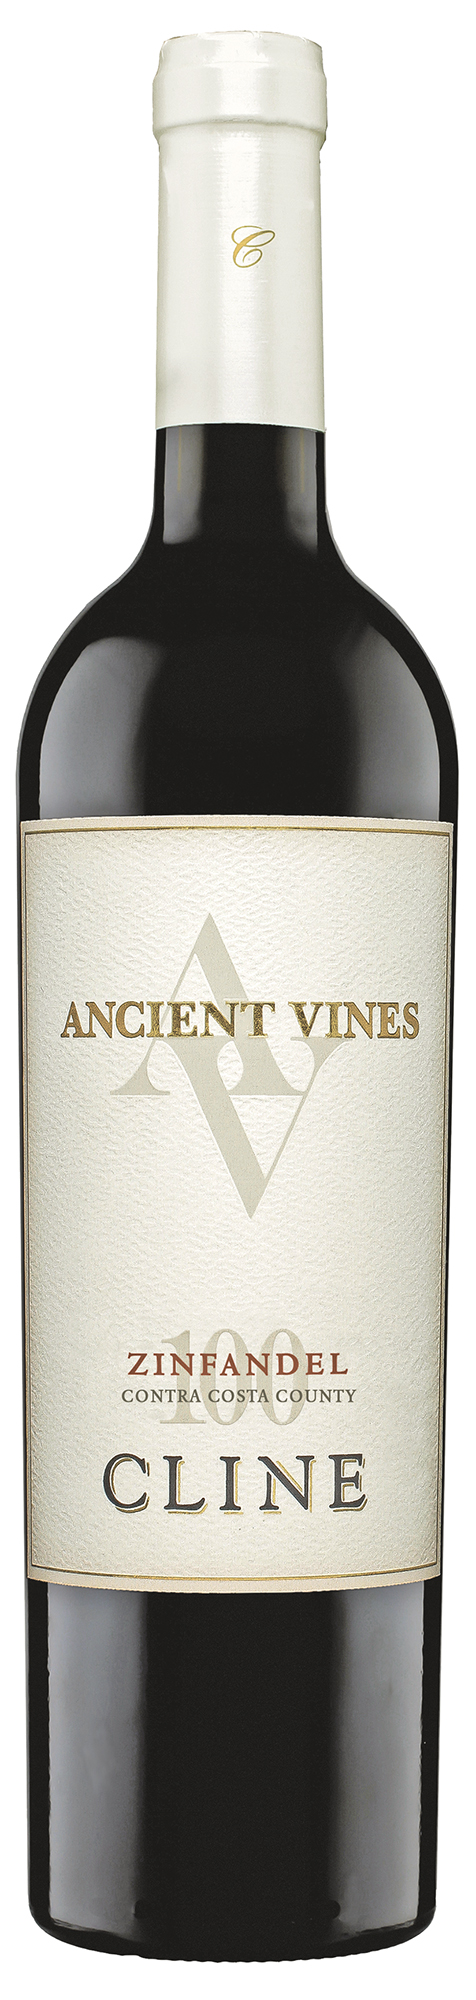 Ancient Vines Zinfandel Contra Costa County, Cline Cellars